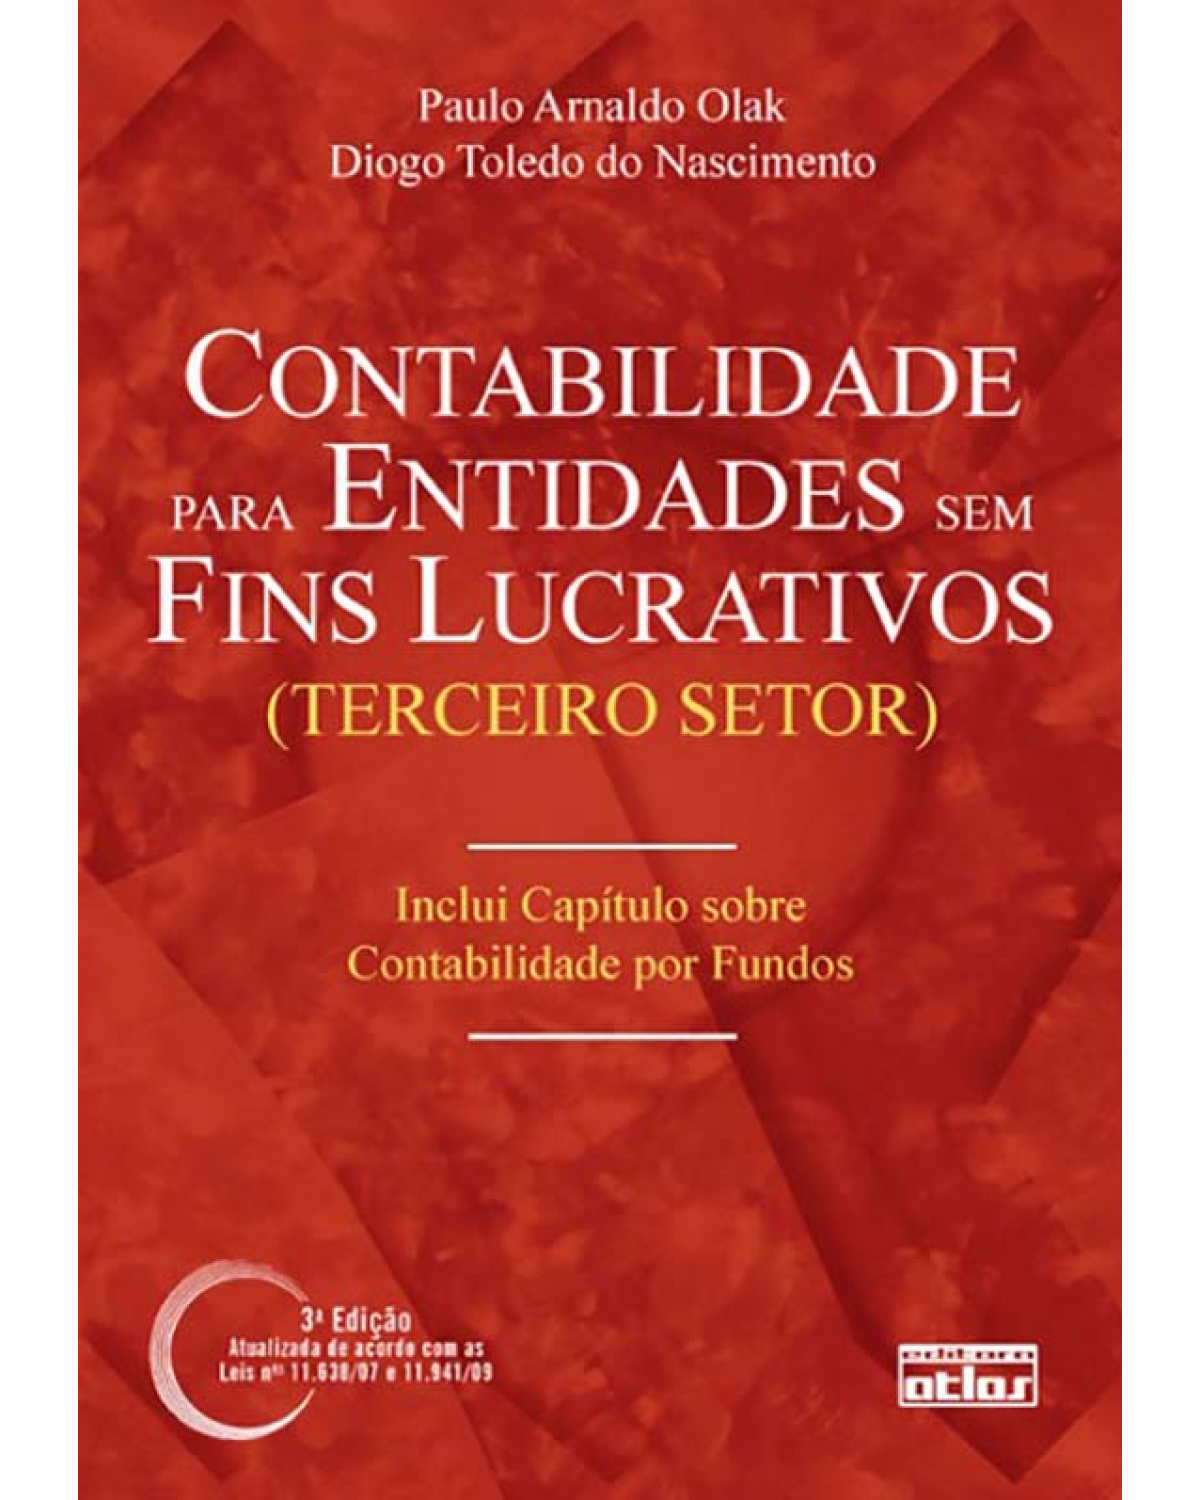 Contabilidade para entidades sem fins lucrativos (terceiro setor) - 3ª Edição | 2010